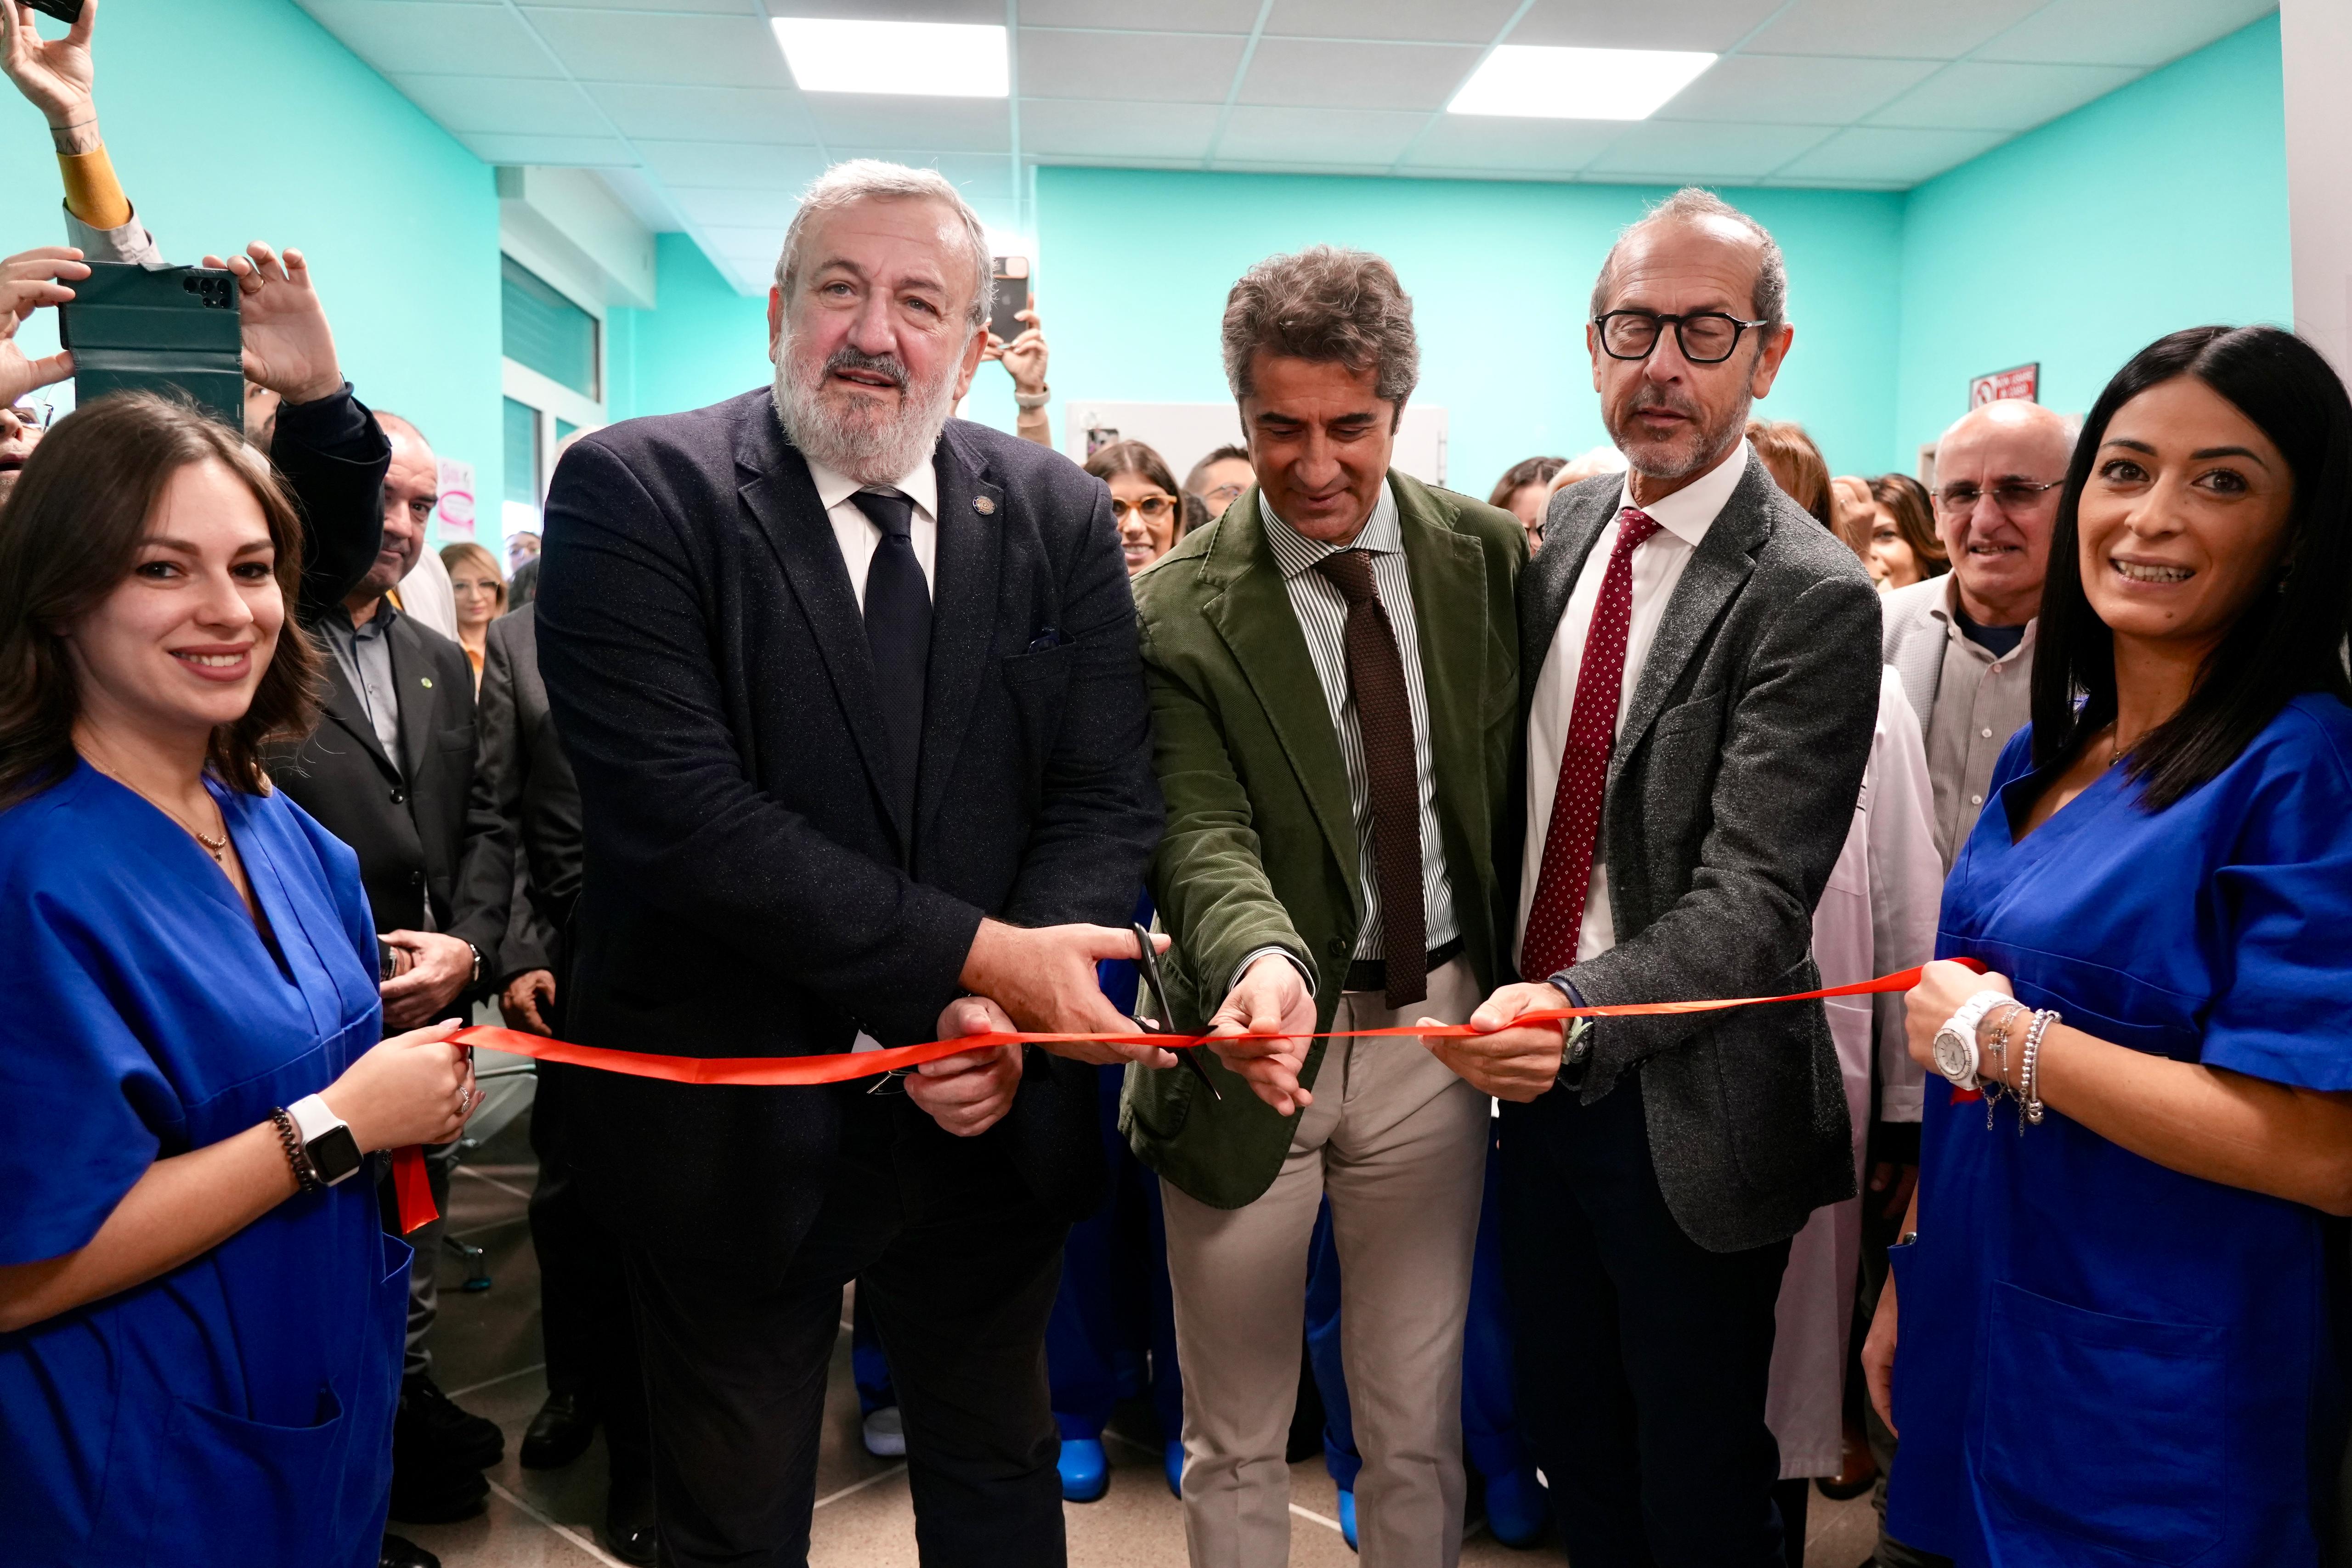 Galleria Altamura, Emiliano inaugura la nuova sede della NPIA: 800 metri quadri dedicati a bambini e adolescenti - Diapositiva 2 di 20